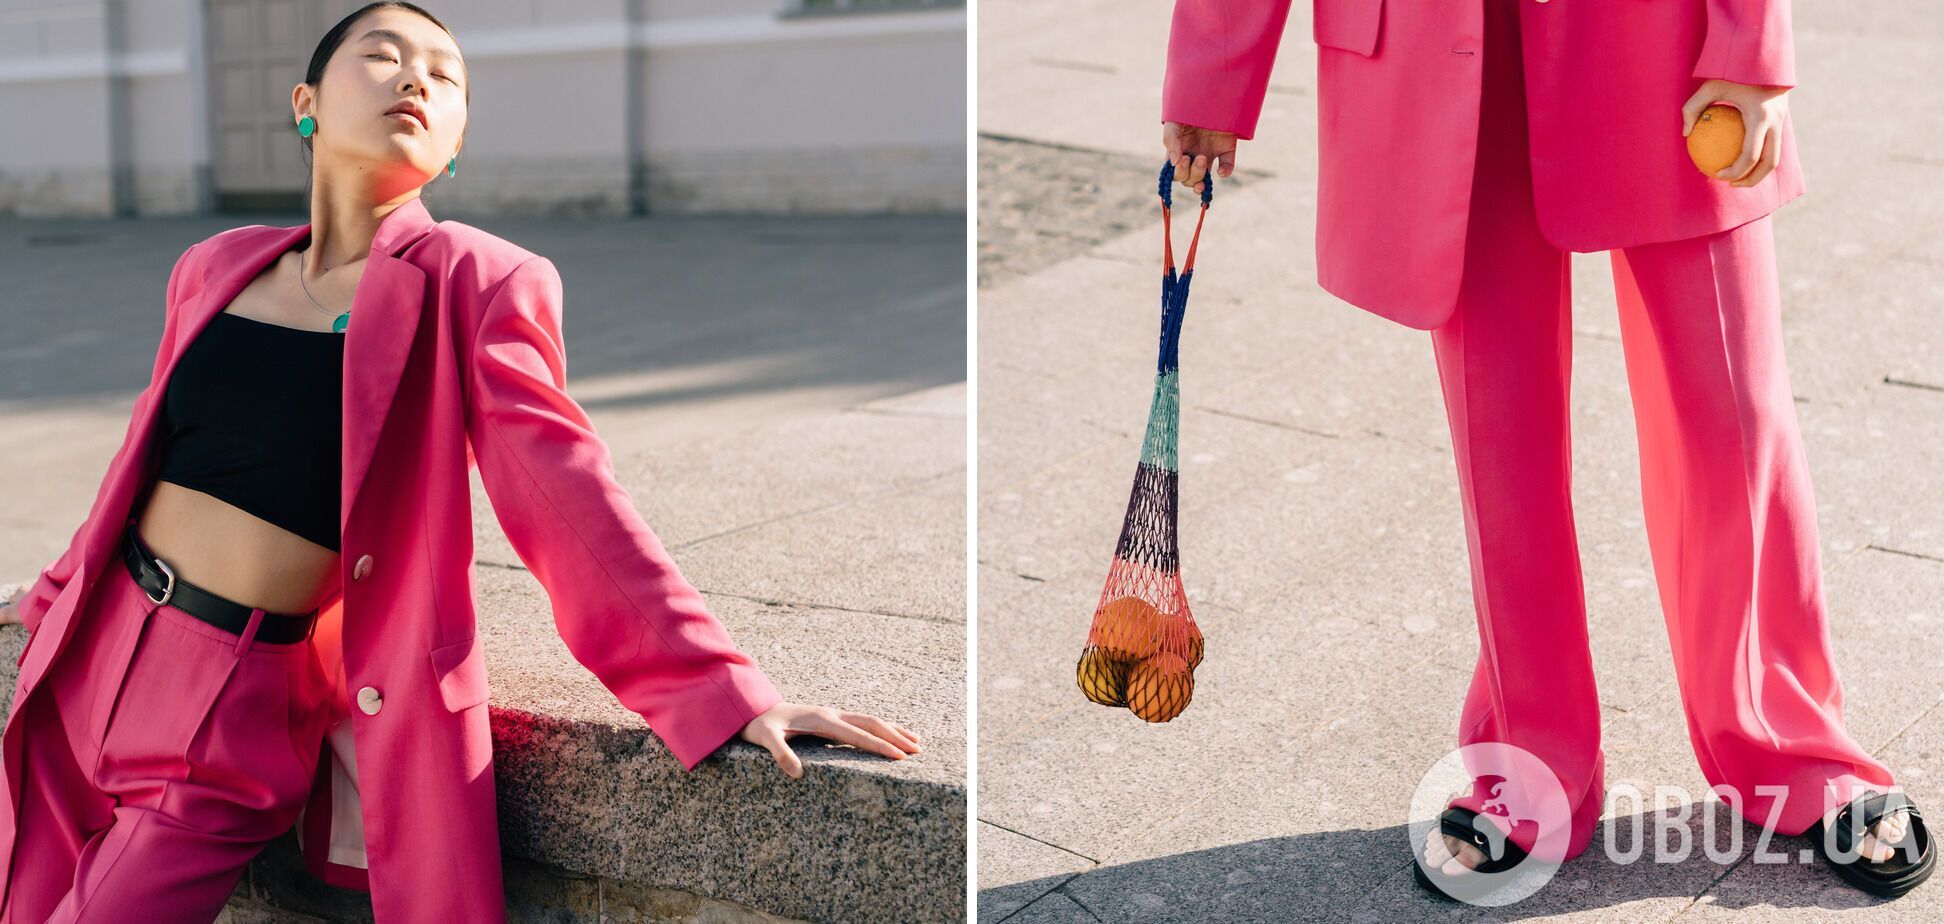 Fuchsia Fedora, он же фуксия – станет явным фаворитом модниц в 2022 году